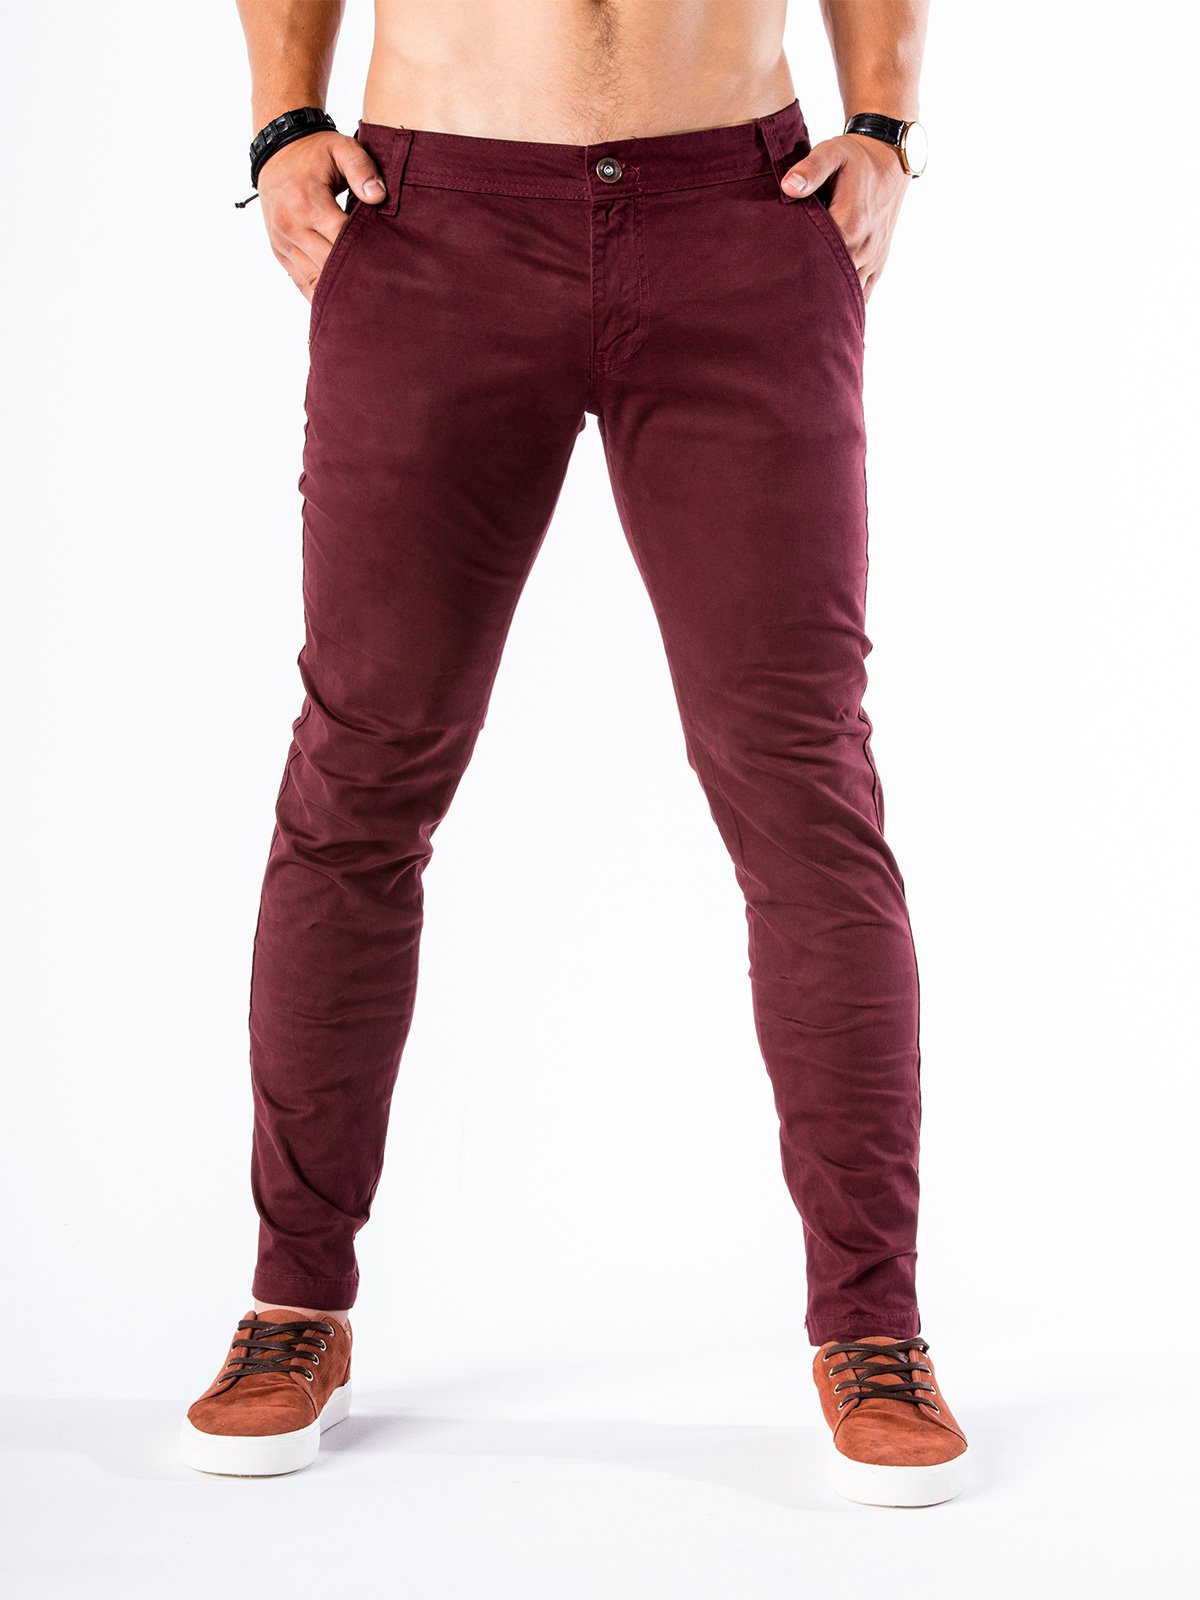 maroon jeans mens